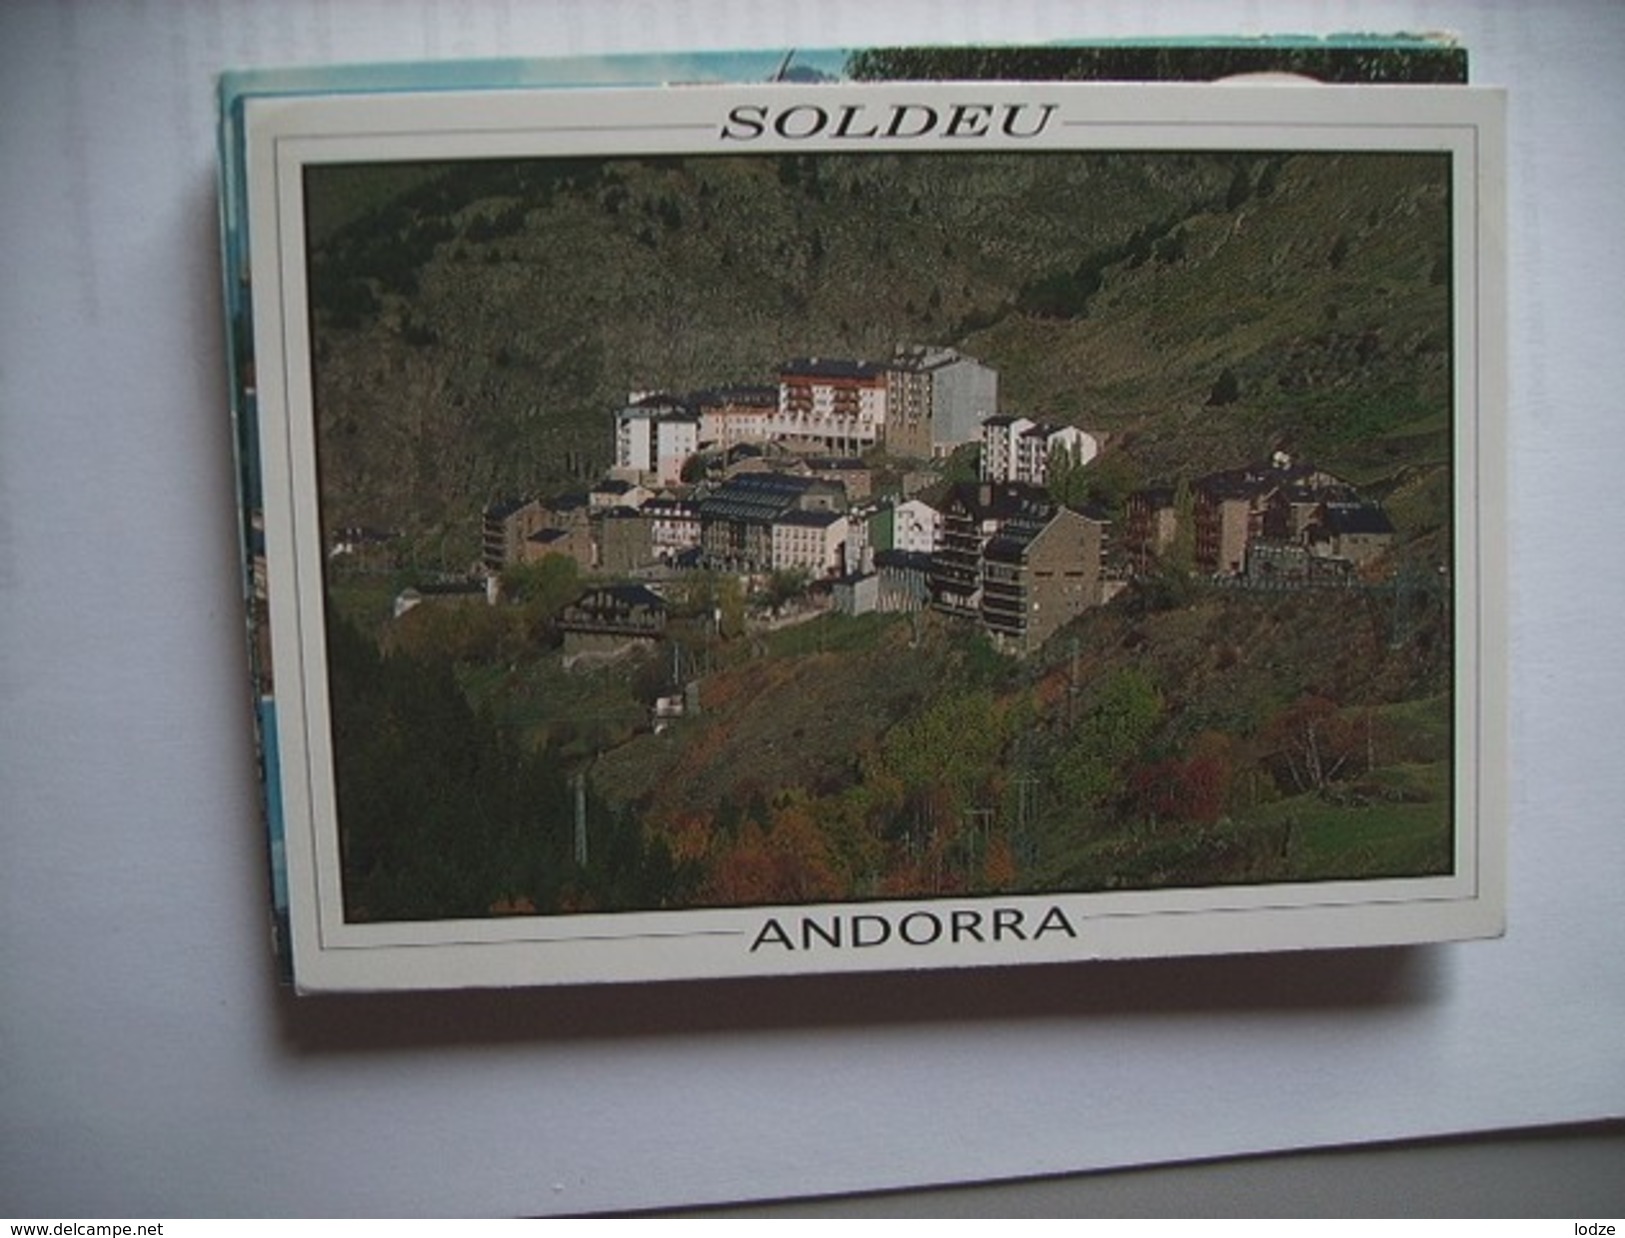 Andorra Soldeu - Andorra